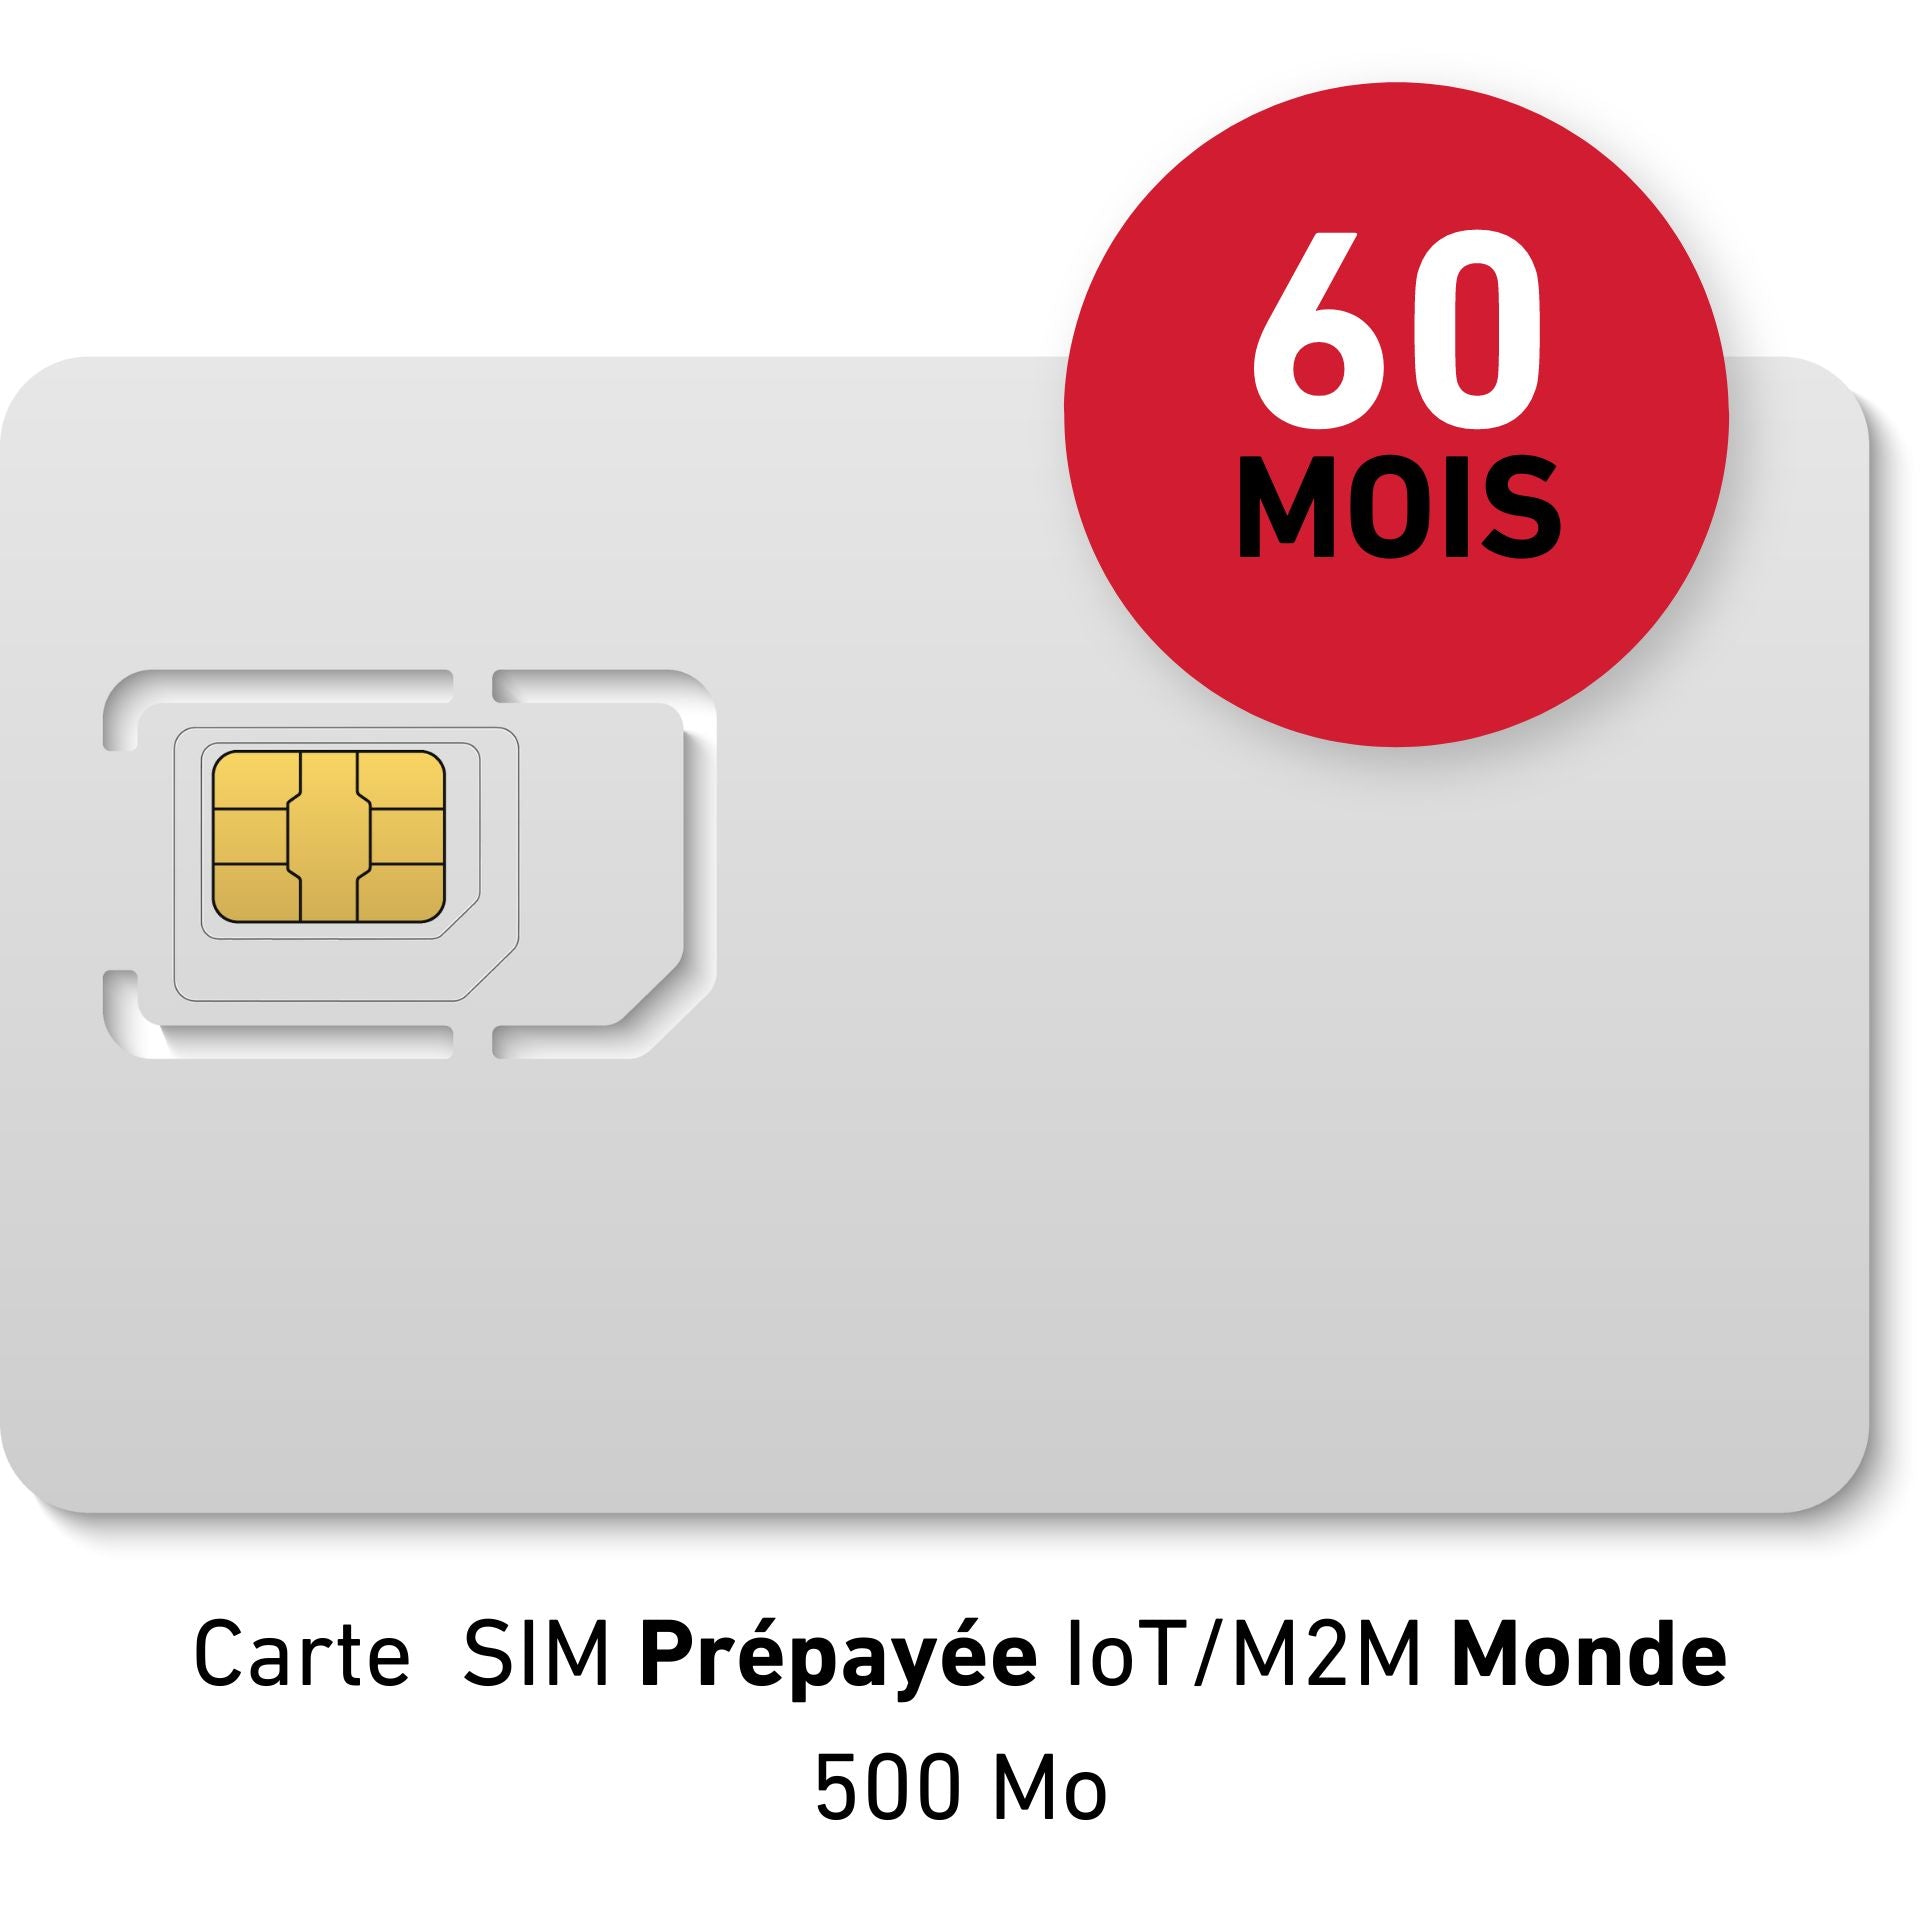 IoT/M2M World Prepaid SIM-Karte - 50 € HT - 500Mb Daten - Gültigkeit 60 MONATE